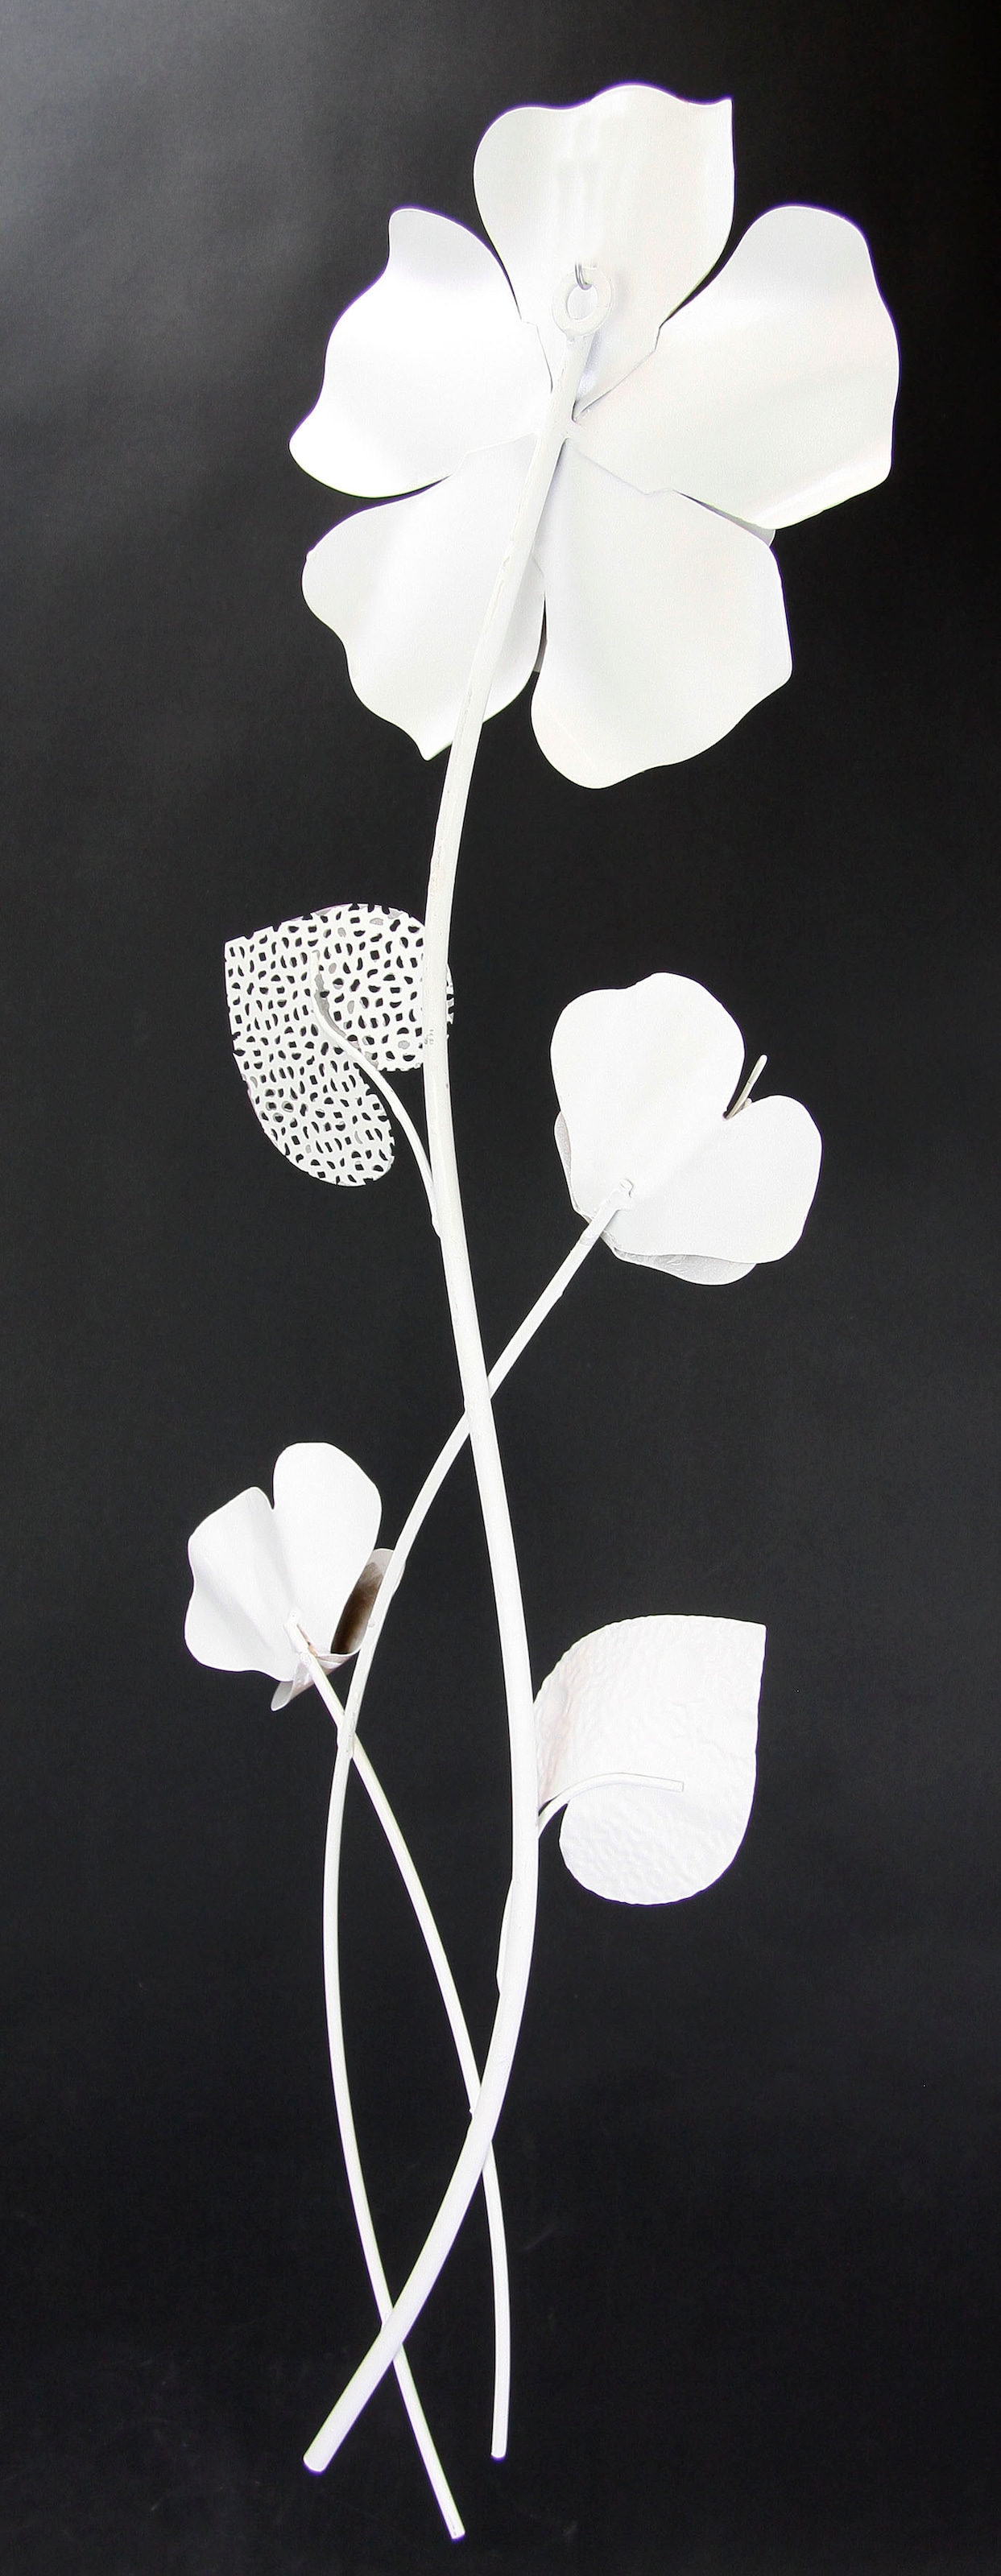 I.GE.A. Wandbild bestellen »Metallbild Blumen«, Wandskulptur Metall, Wanddeko, online